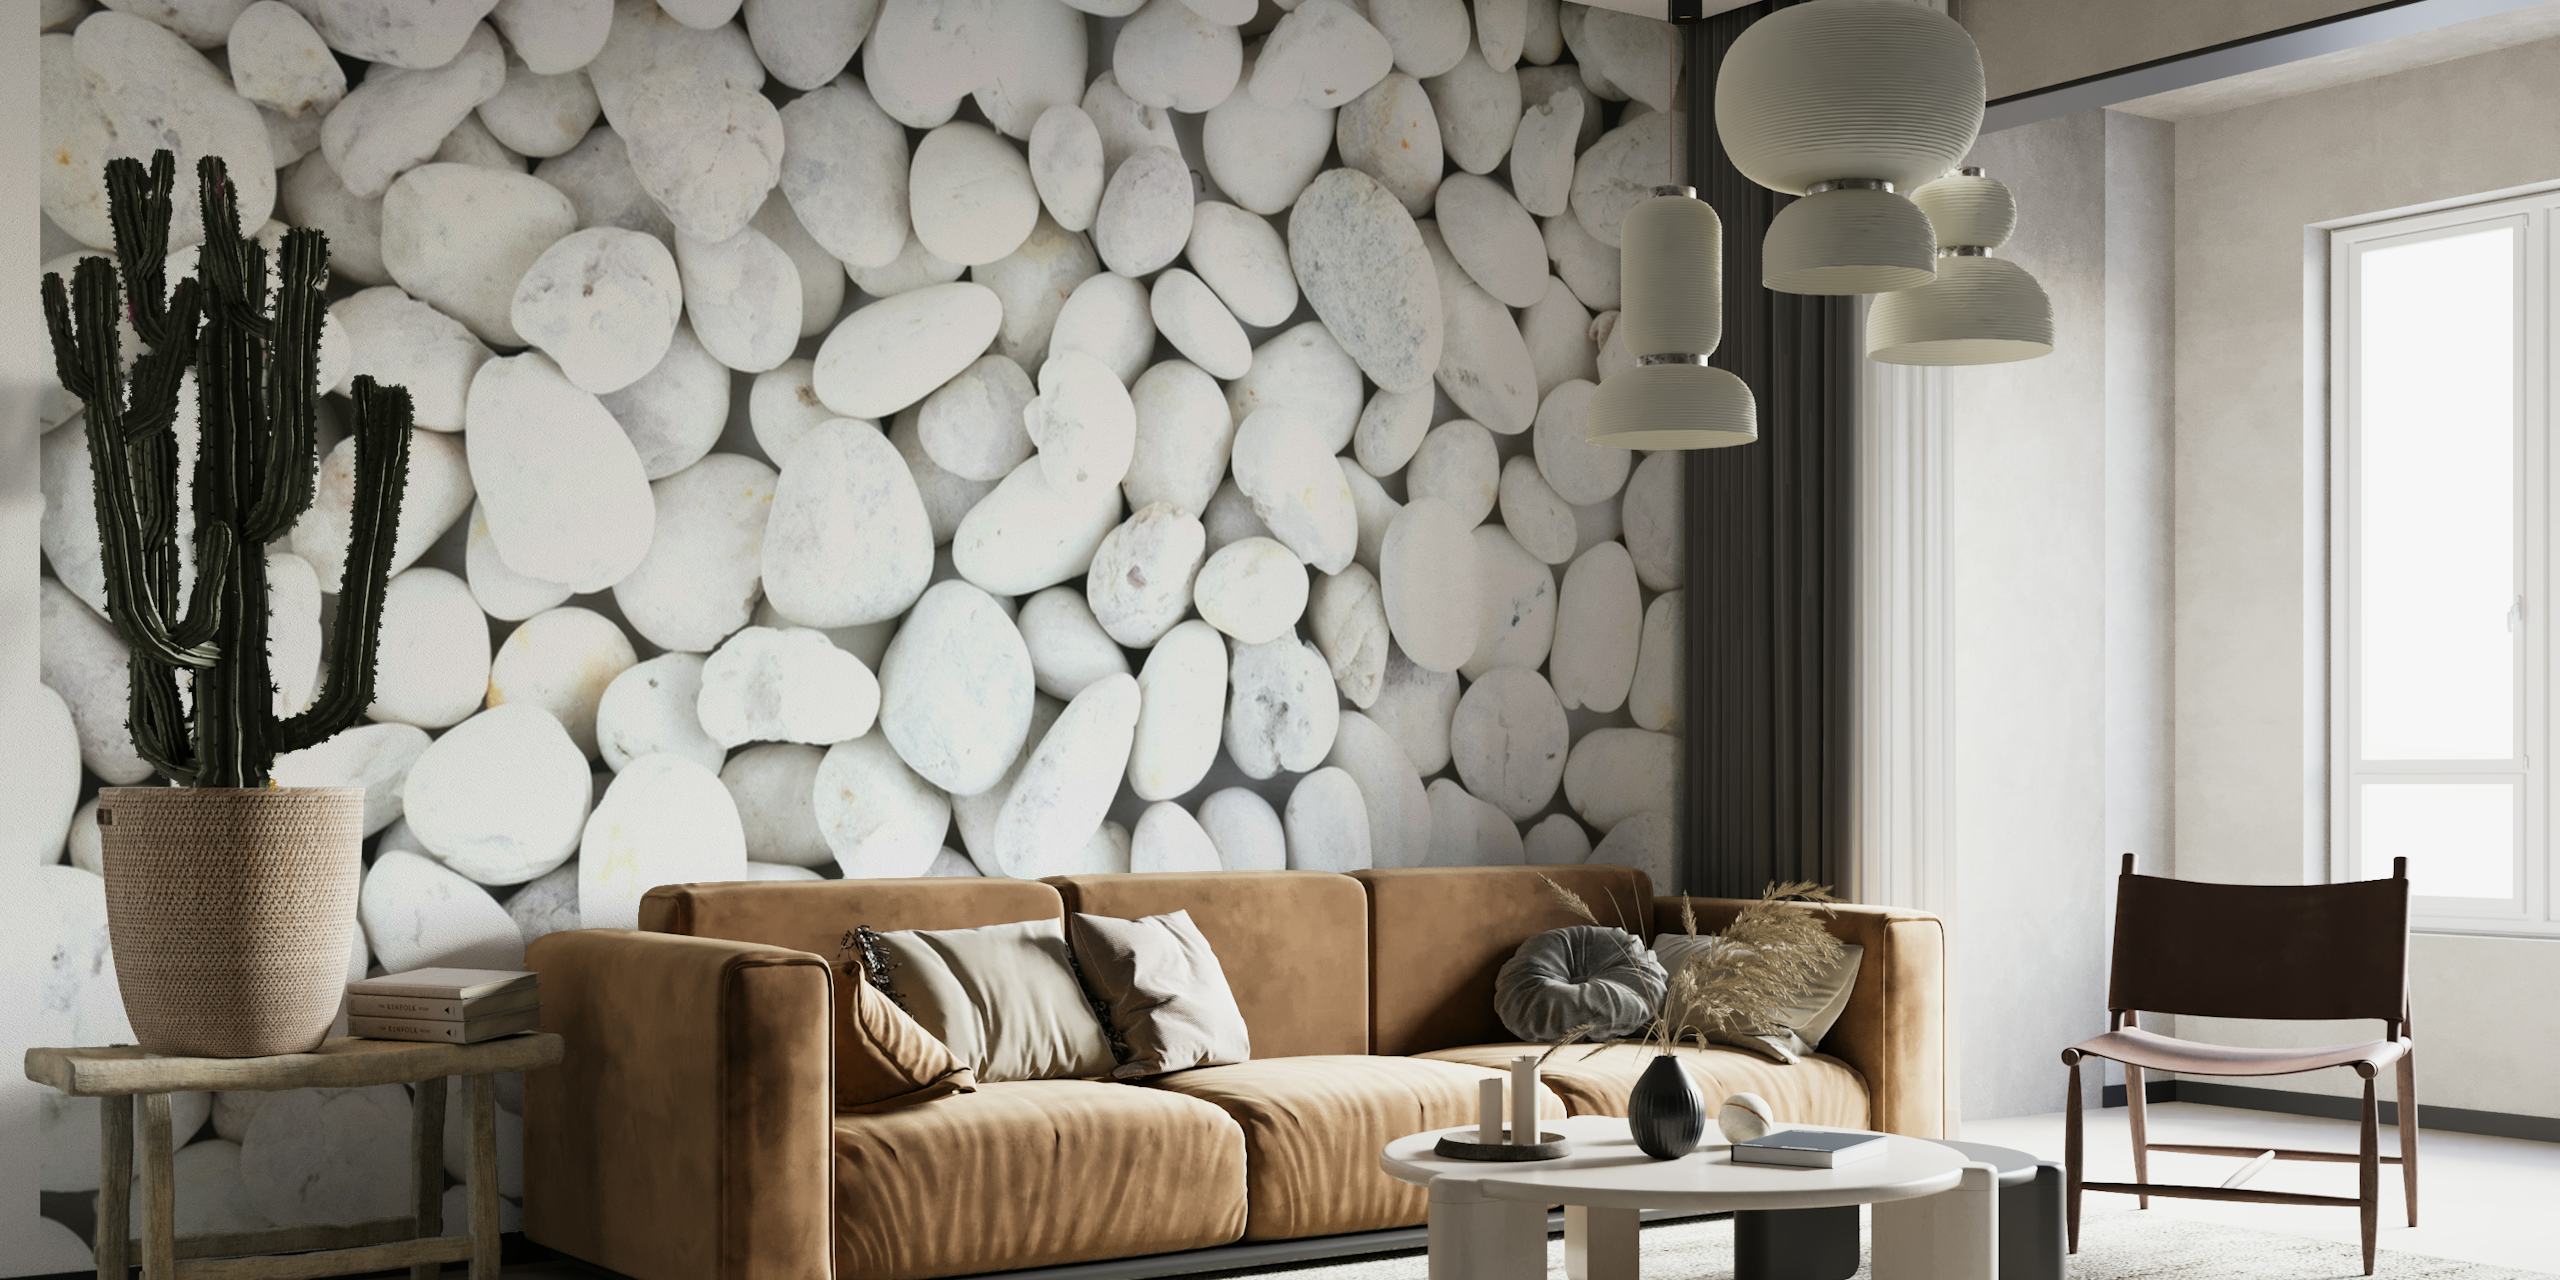 Seinätapetti sileistä valkoisista kivistä luovat rauhallisen, kuvioituneen ilmeen